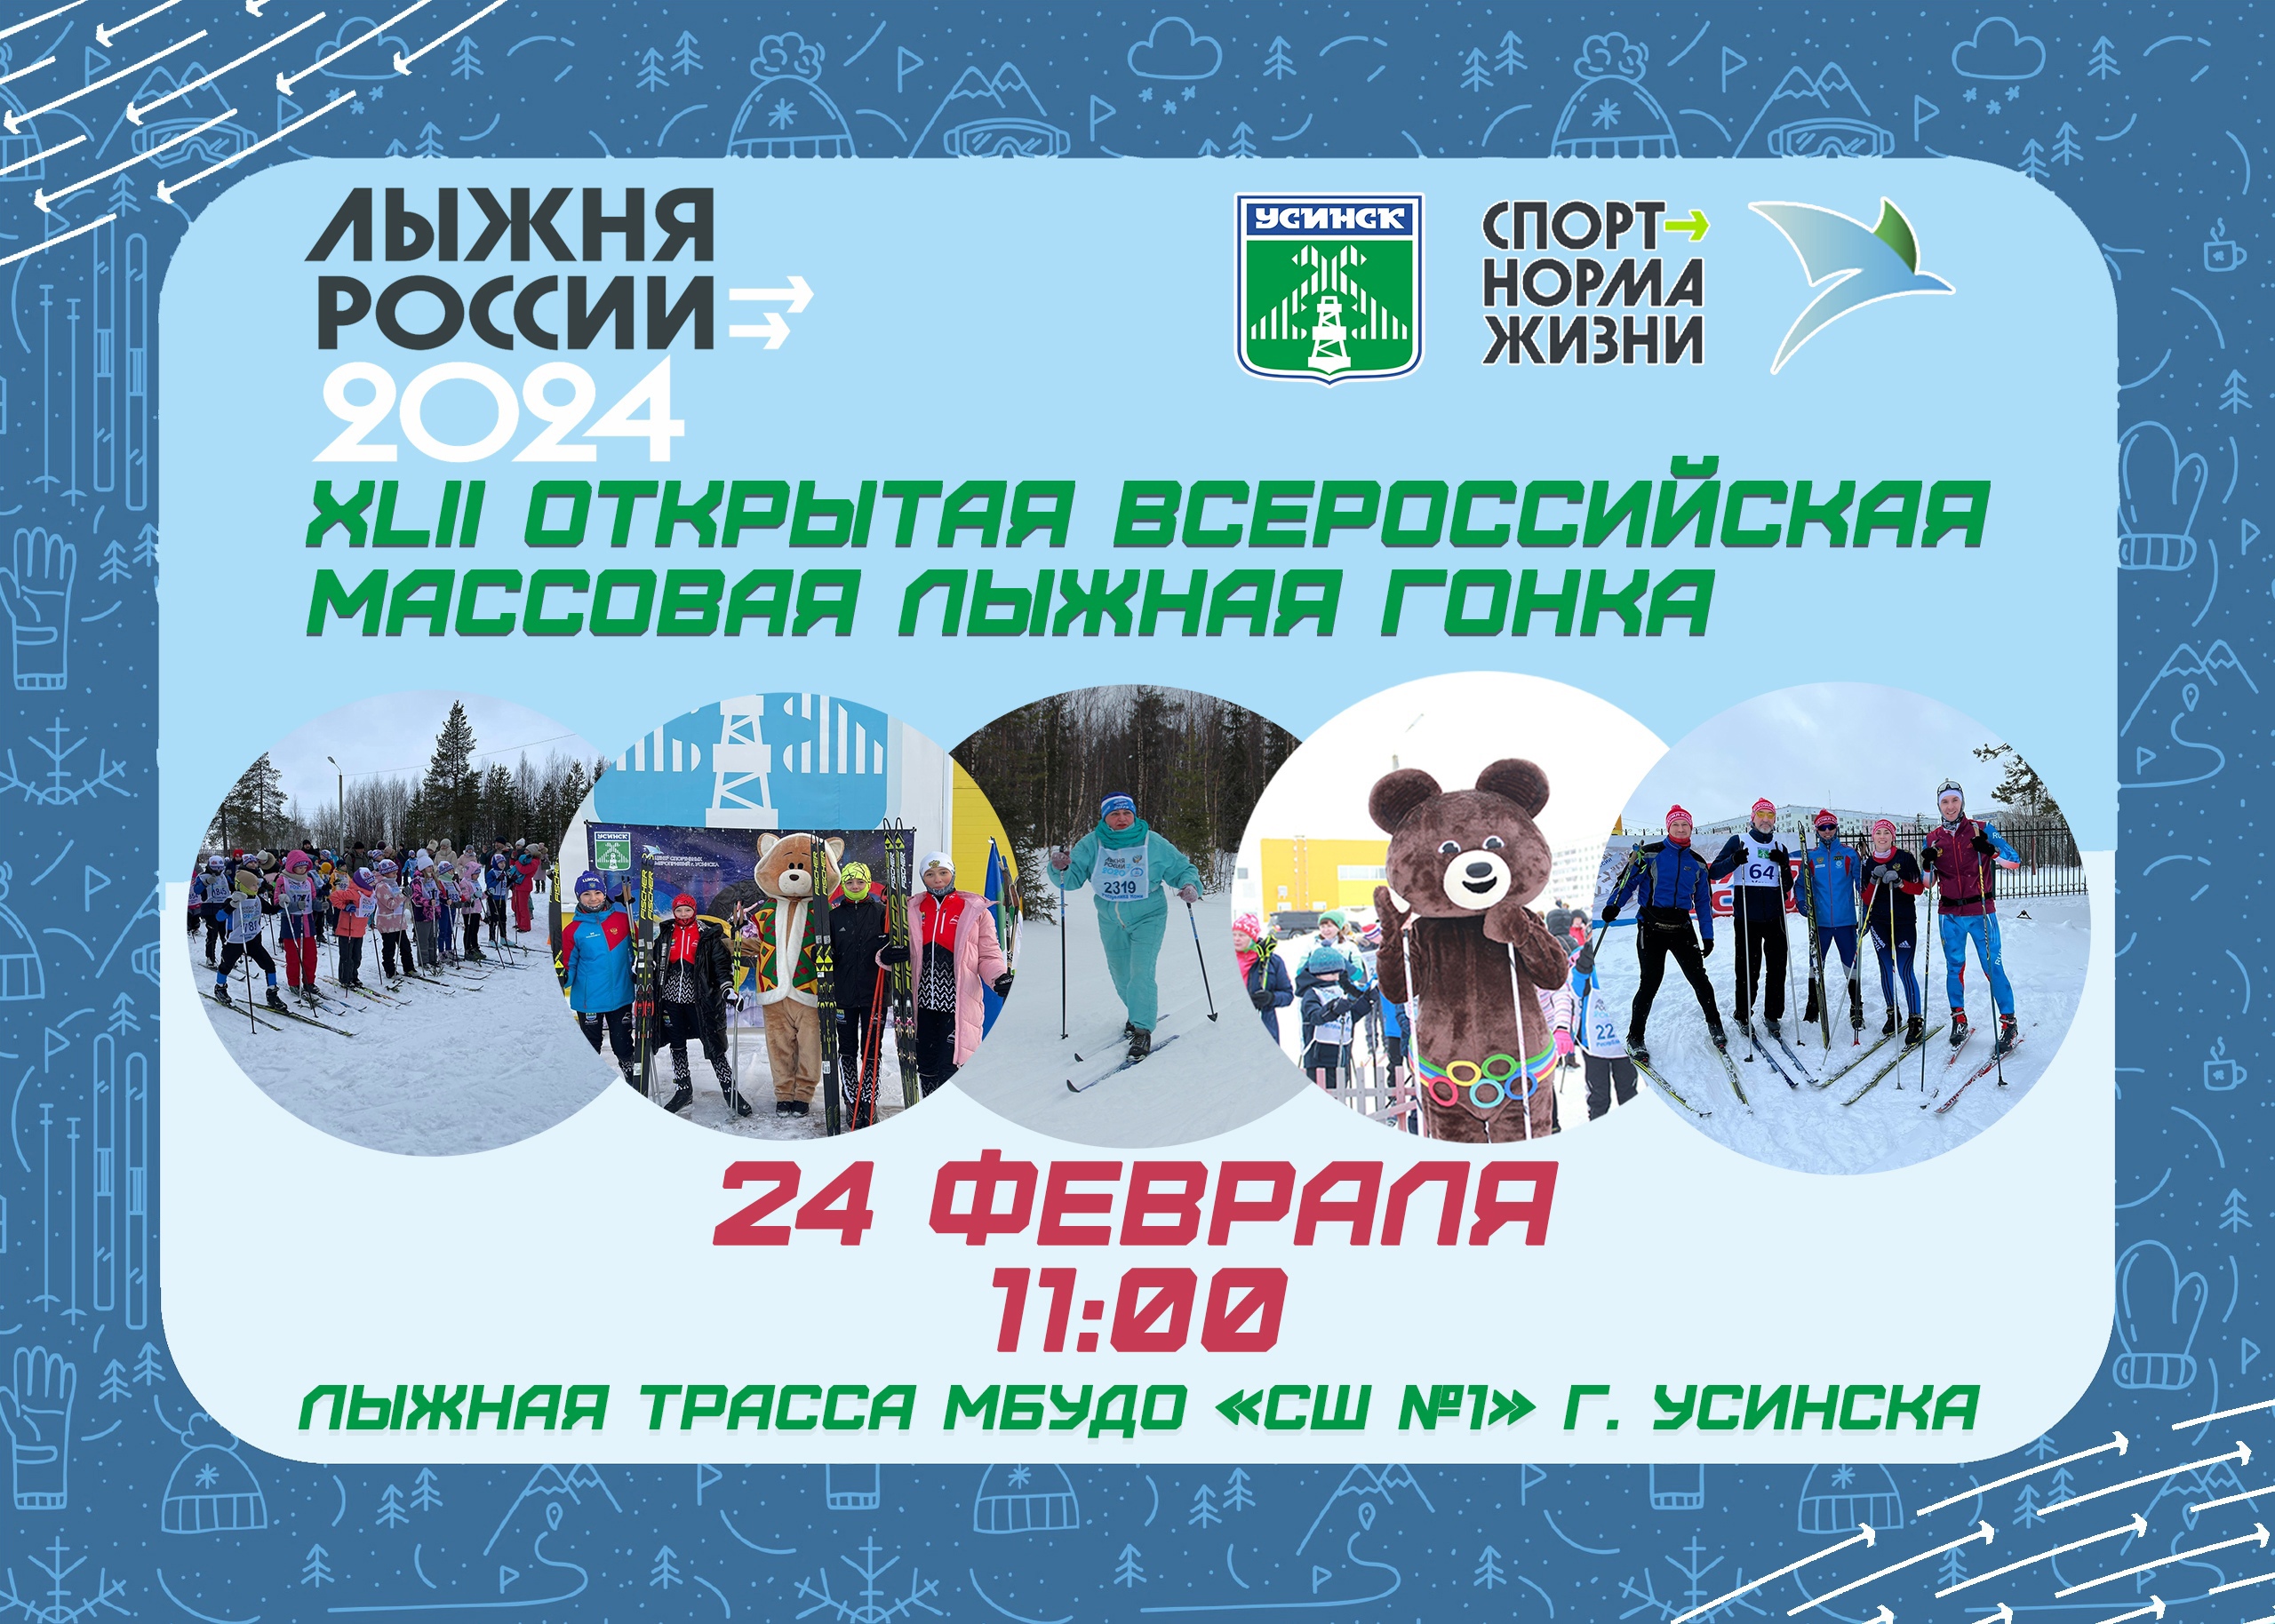 XLII Всероссийская массовая лыжная гонка «Лыжня России - 2024» на территории муниципального округа «Усинск» состоится 24 февраля.